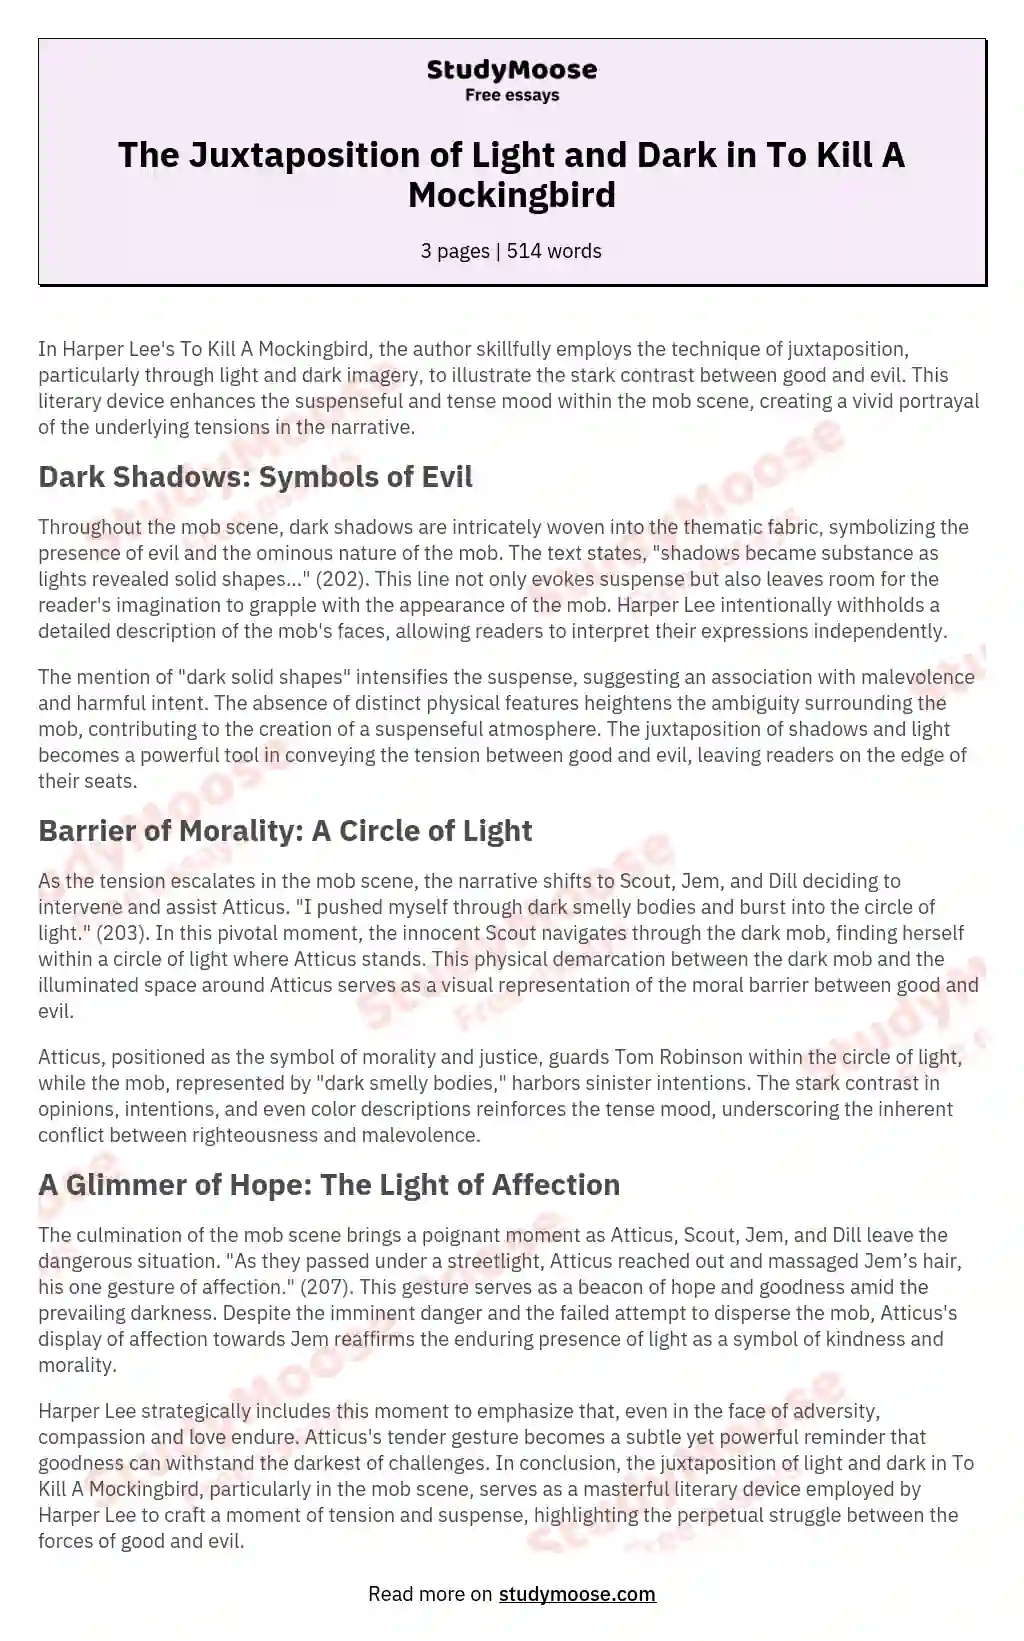 The Juxtaposition of Light and Dark in To Kill A Mockingbird essay